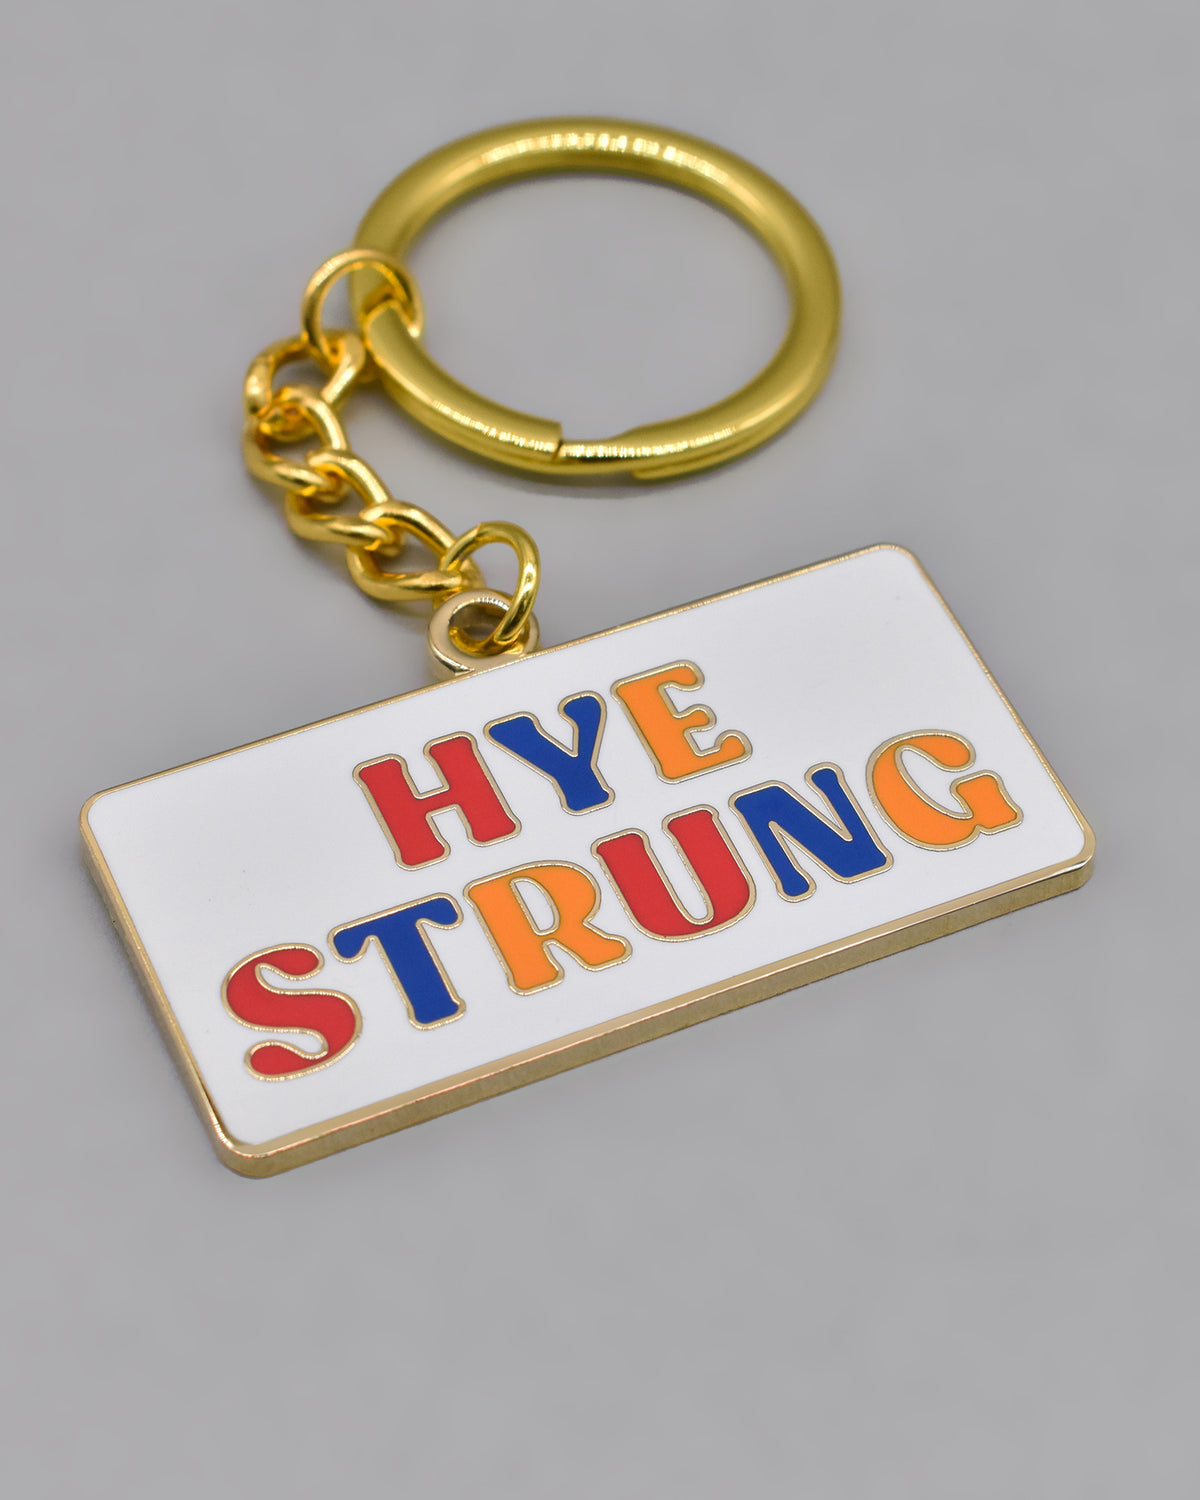 Hye Strung Keychain